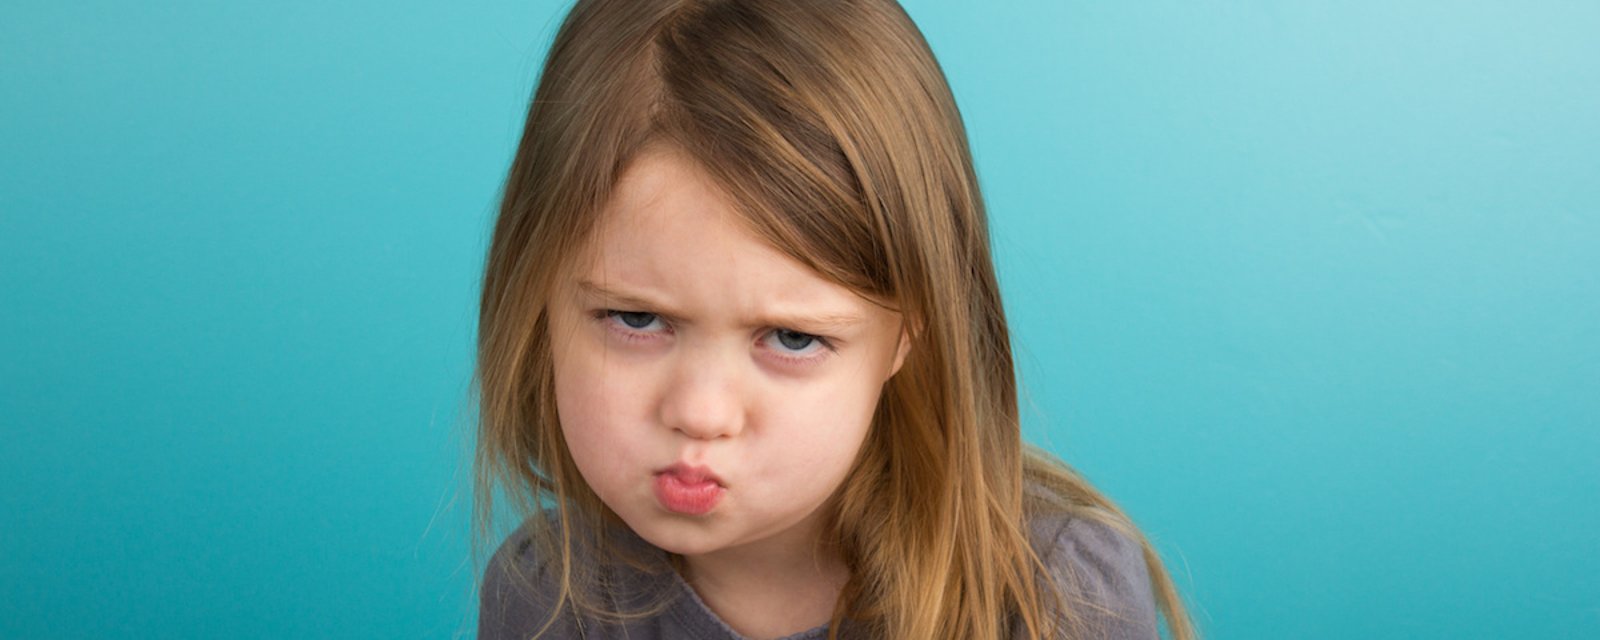 Comment bien réagir face à un enfant irrespectueux: 9 conseils